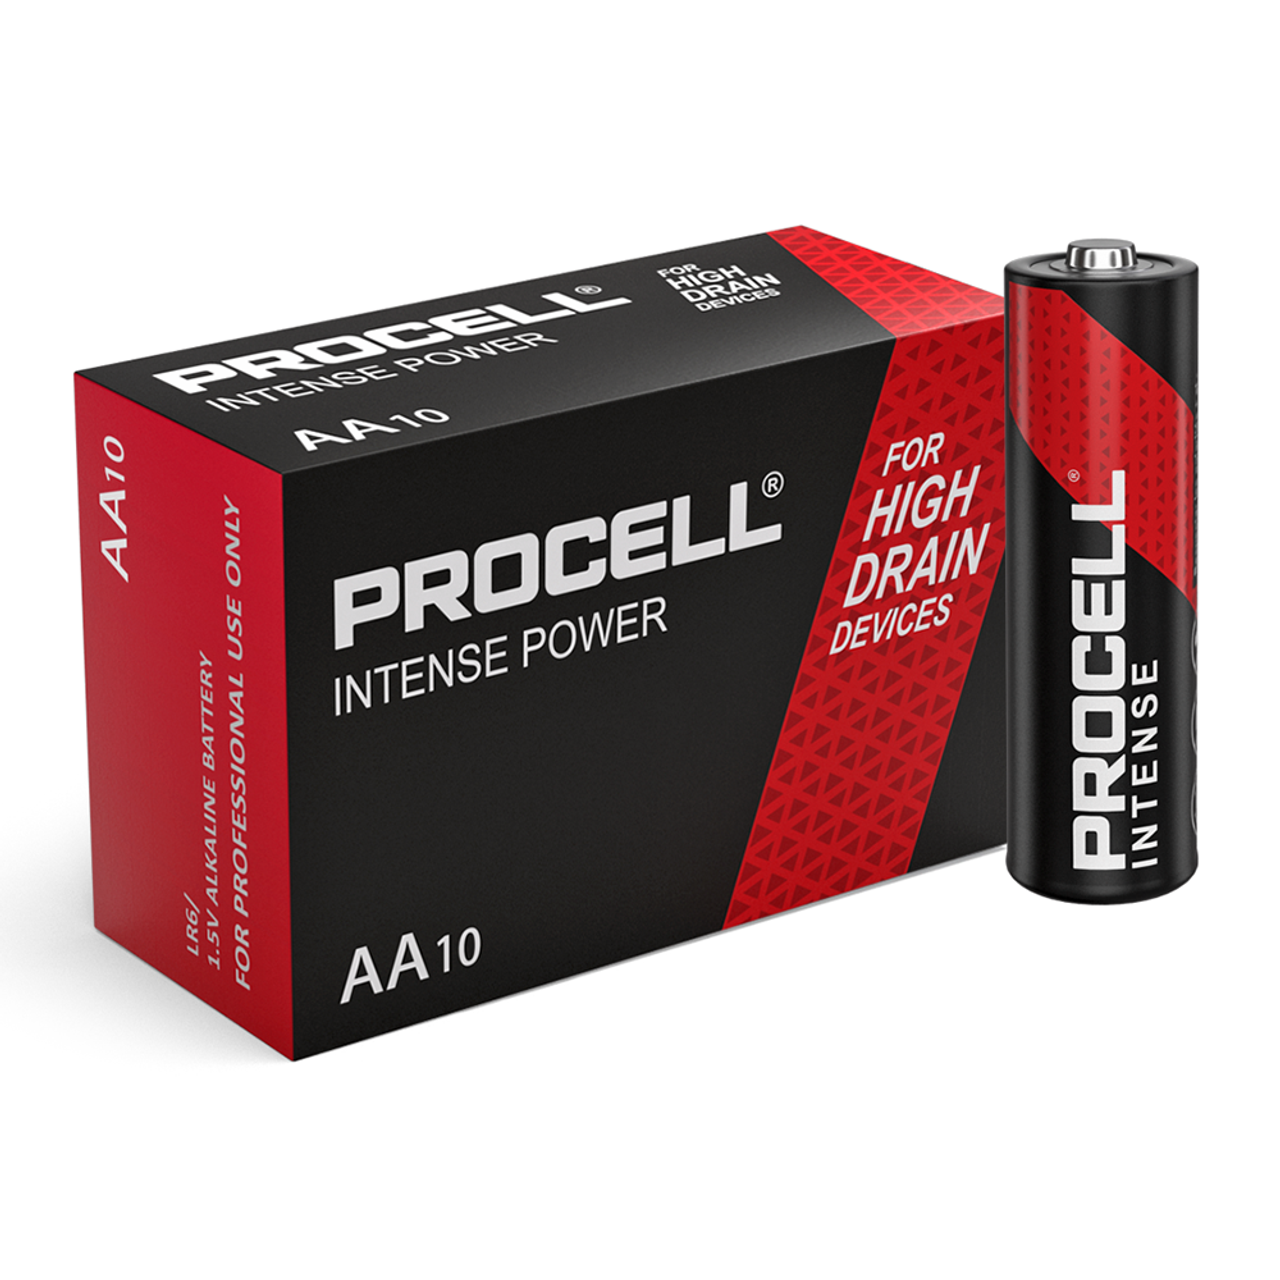 Duracell Procell Intense Power AA LR6 PX1500 Batteries